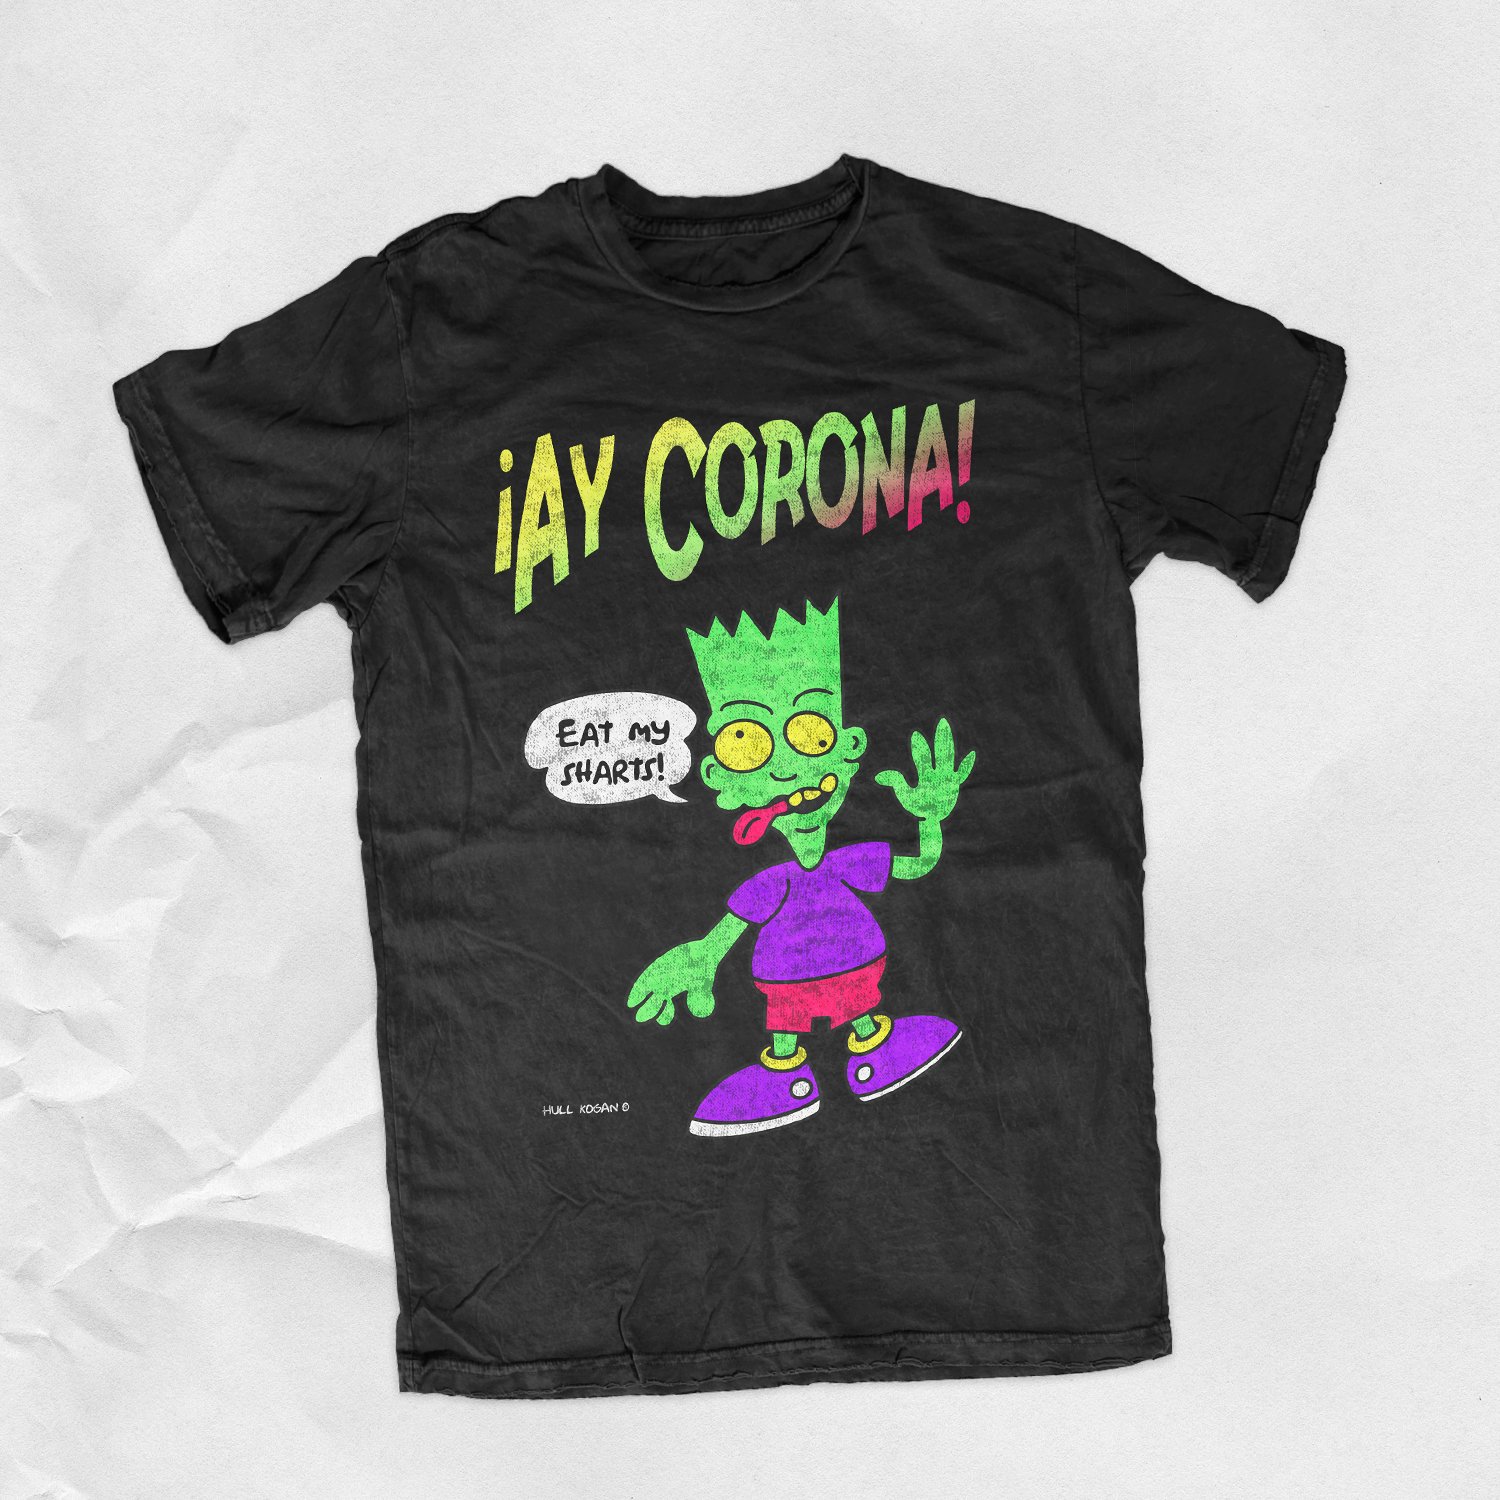 ¡Ay Corona! - Shirt & Sticker